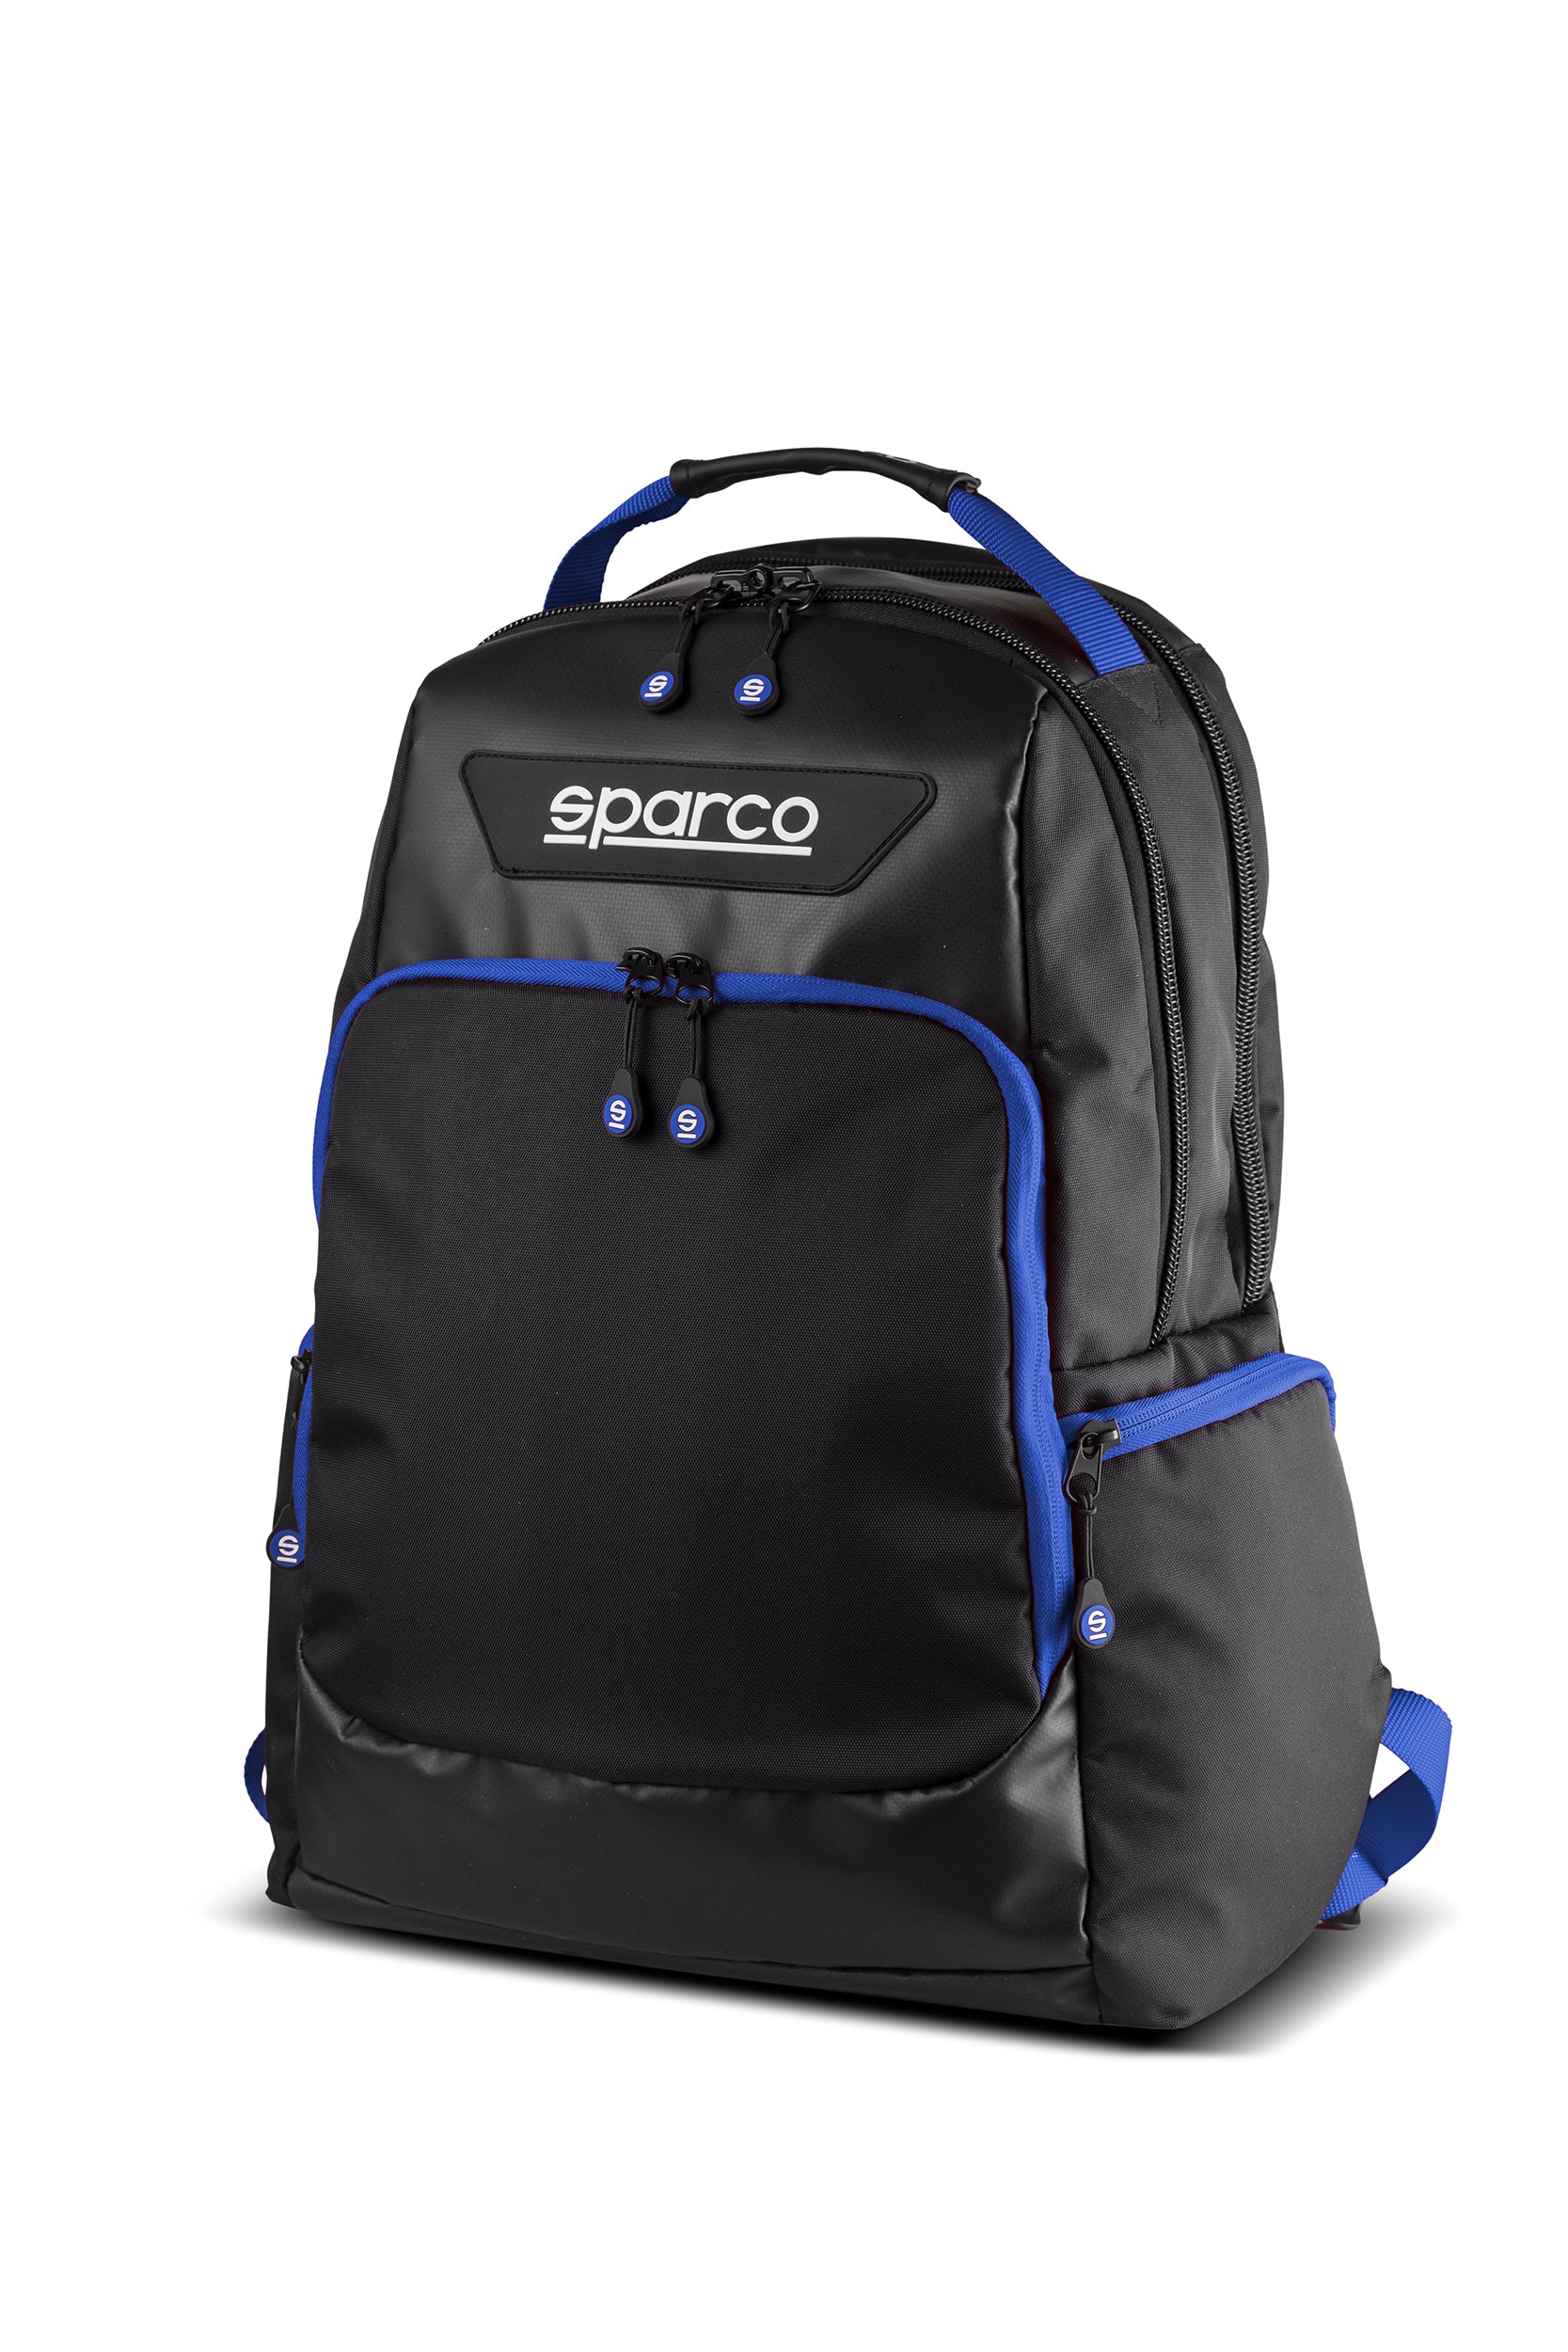 SPARCO 016445NRAZ SUPERSTAGE Backpack, black/blue Photo-1 